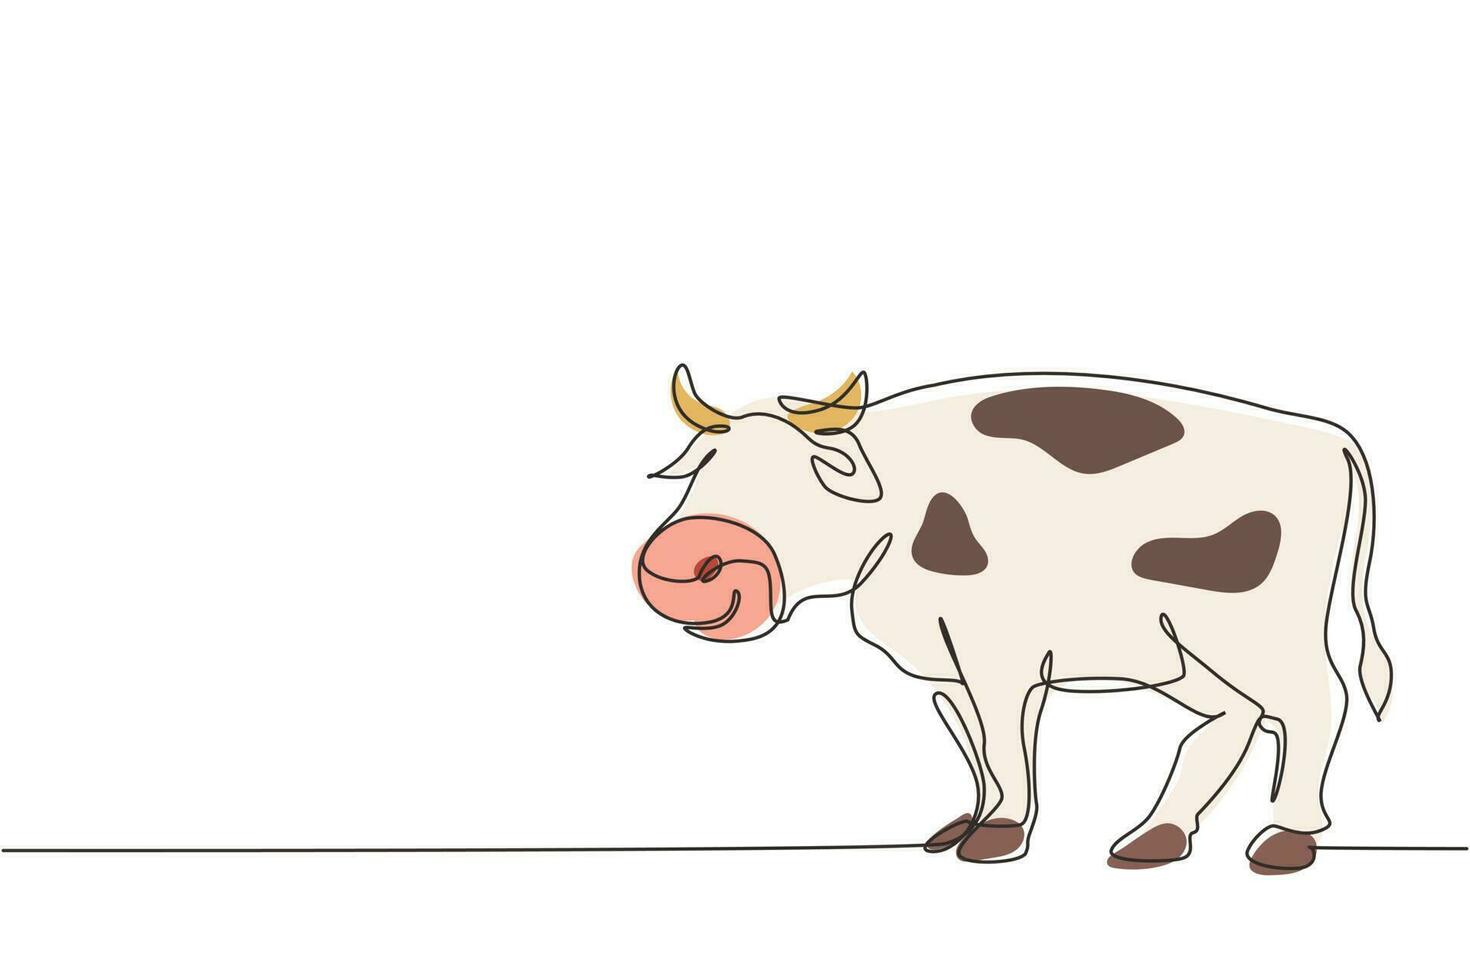 dibujo de una sola línea de vaca gorda para la identidad del logotipo de cría. concepto de mascota animal mamífero para icono de ganado. leche de vaca animal y carne de res. ilustración de vector gráfico de diseño de dibujo de línea continua